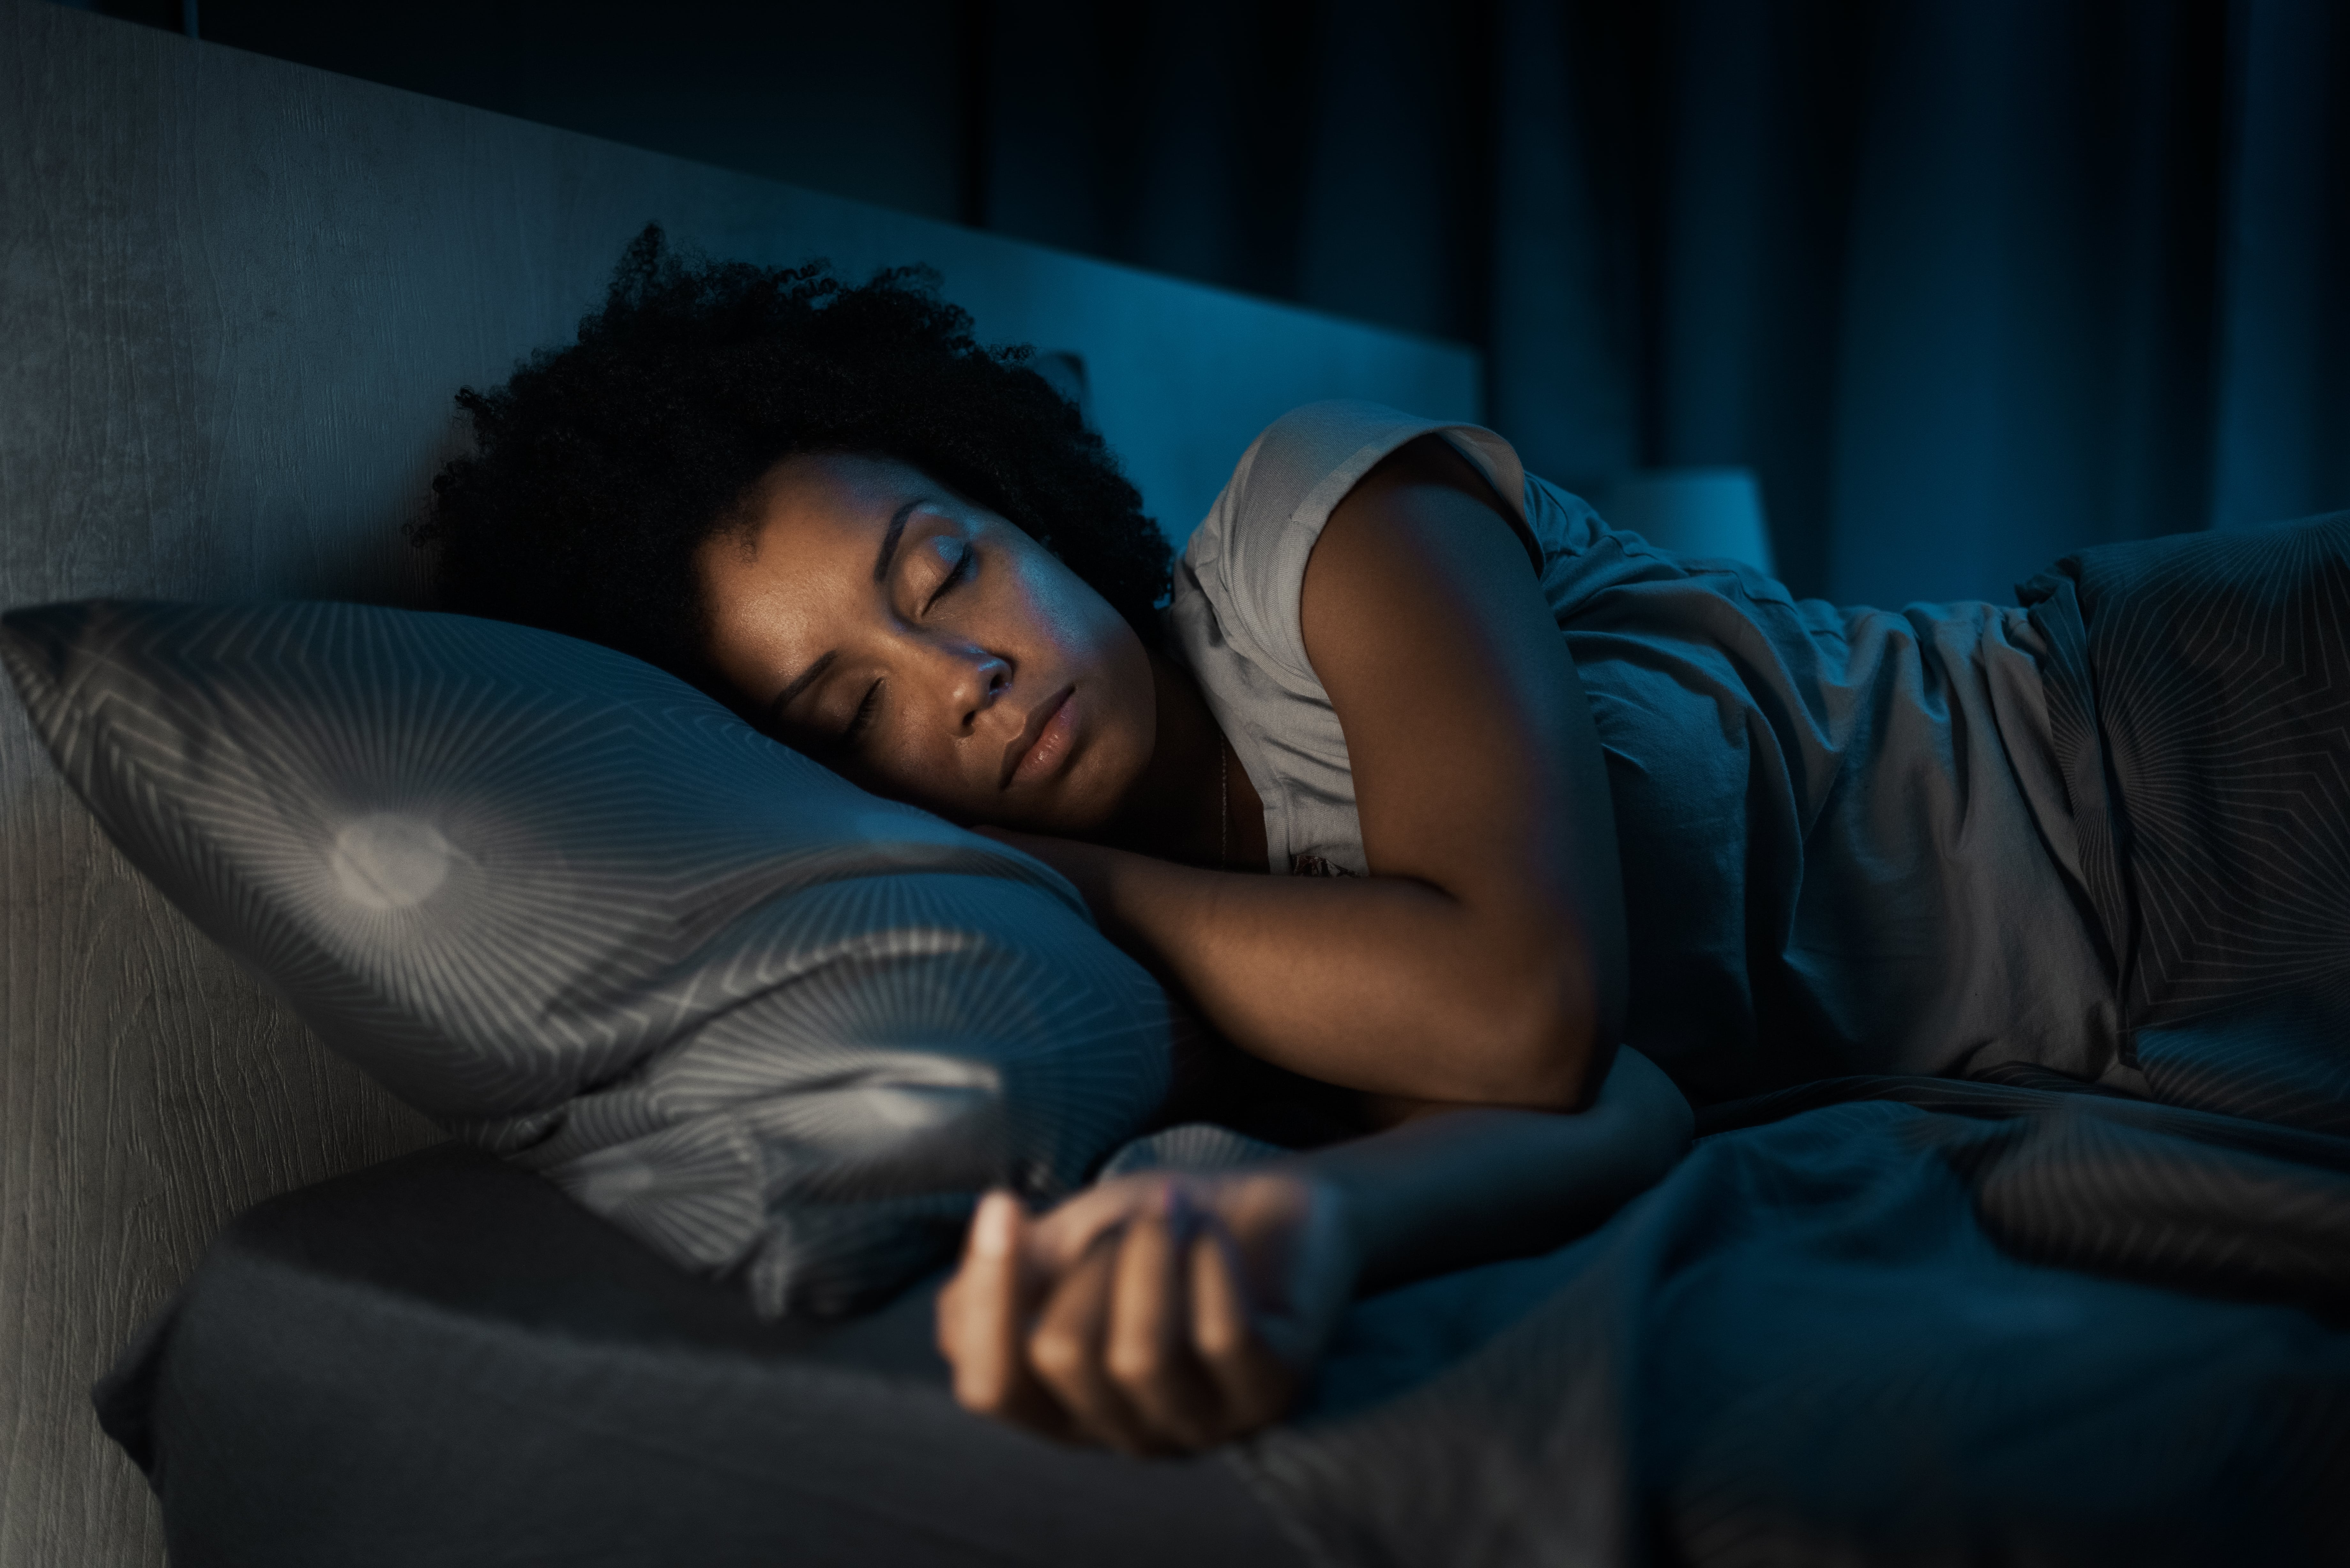     Pendant 3 jours, des spécialistes se penchent sur les troubles du sommeil en Guadeloupe

